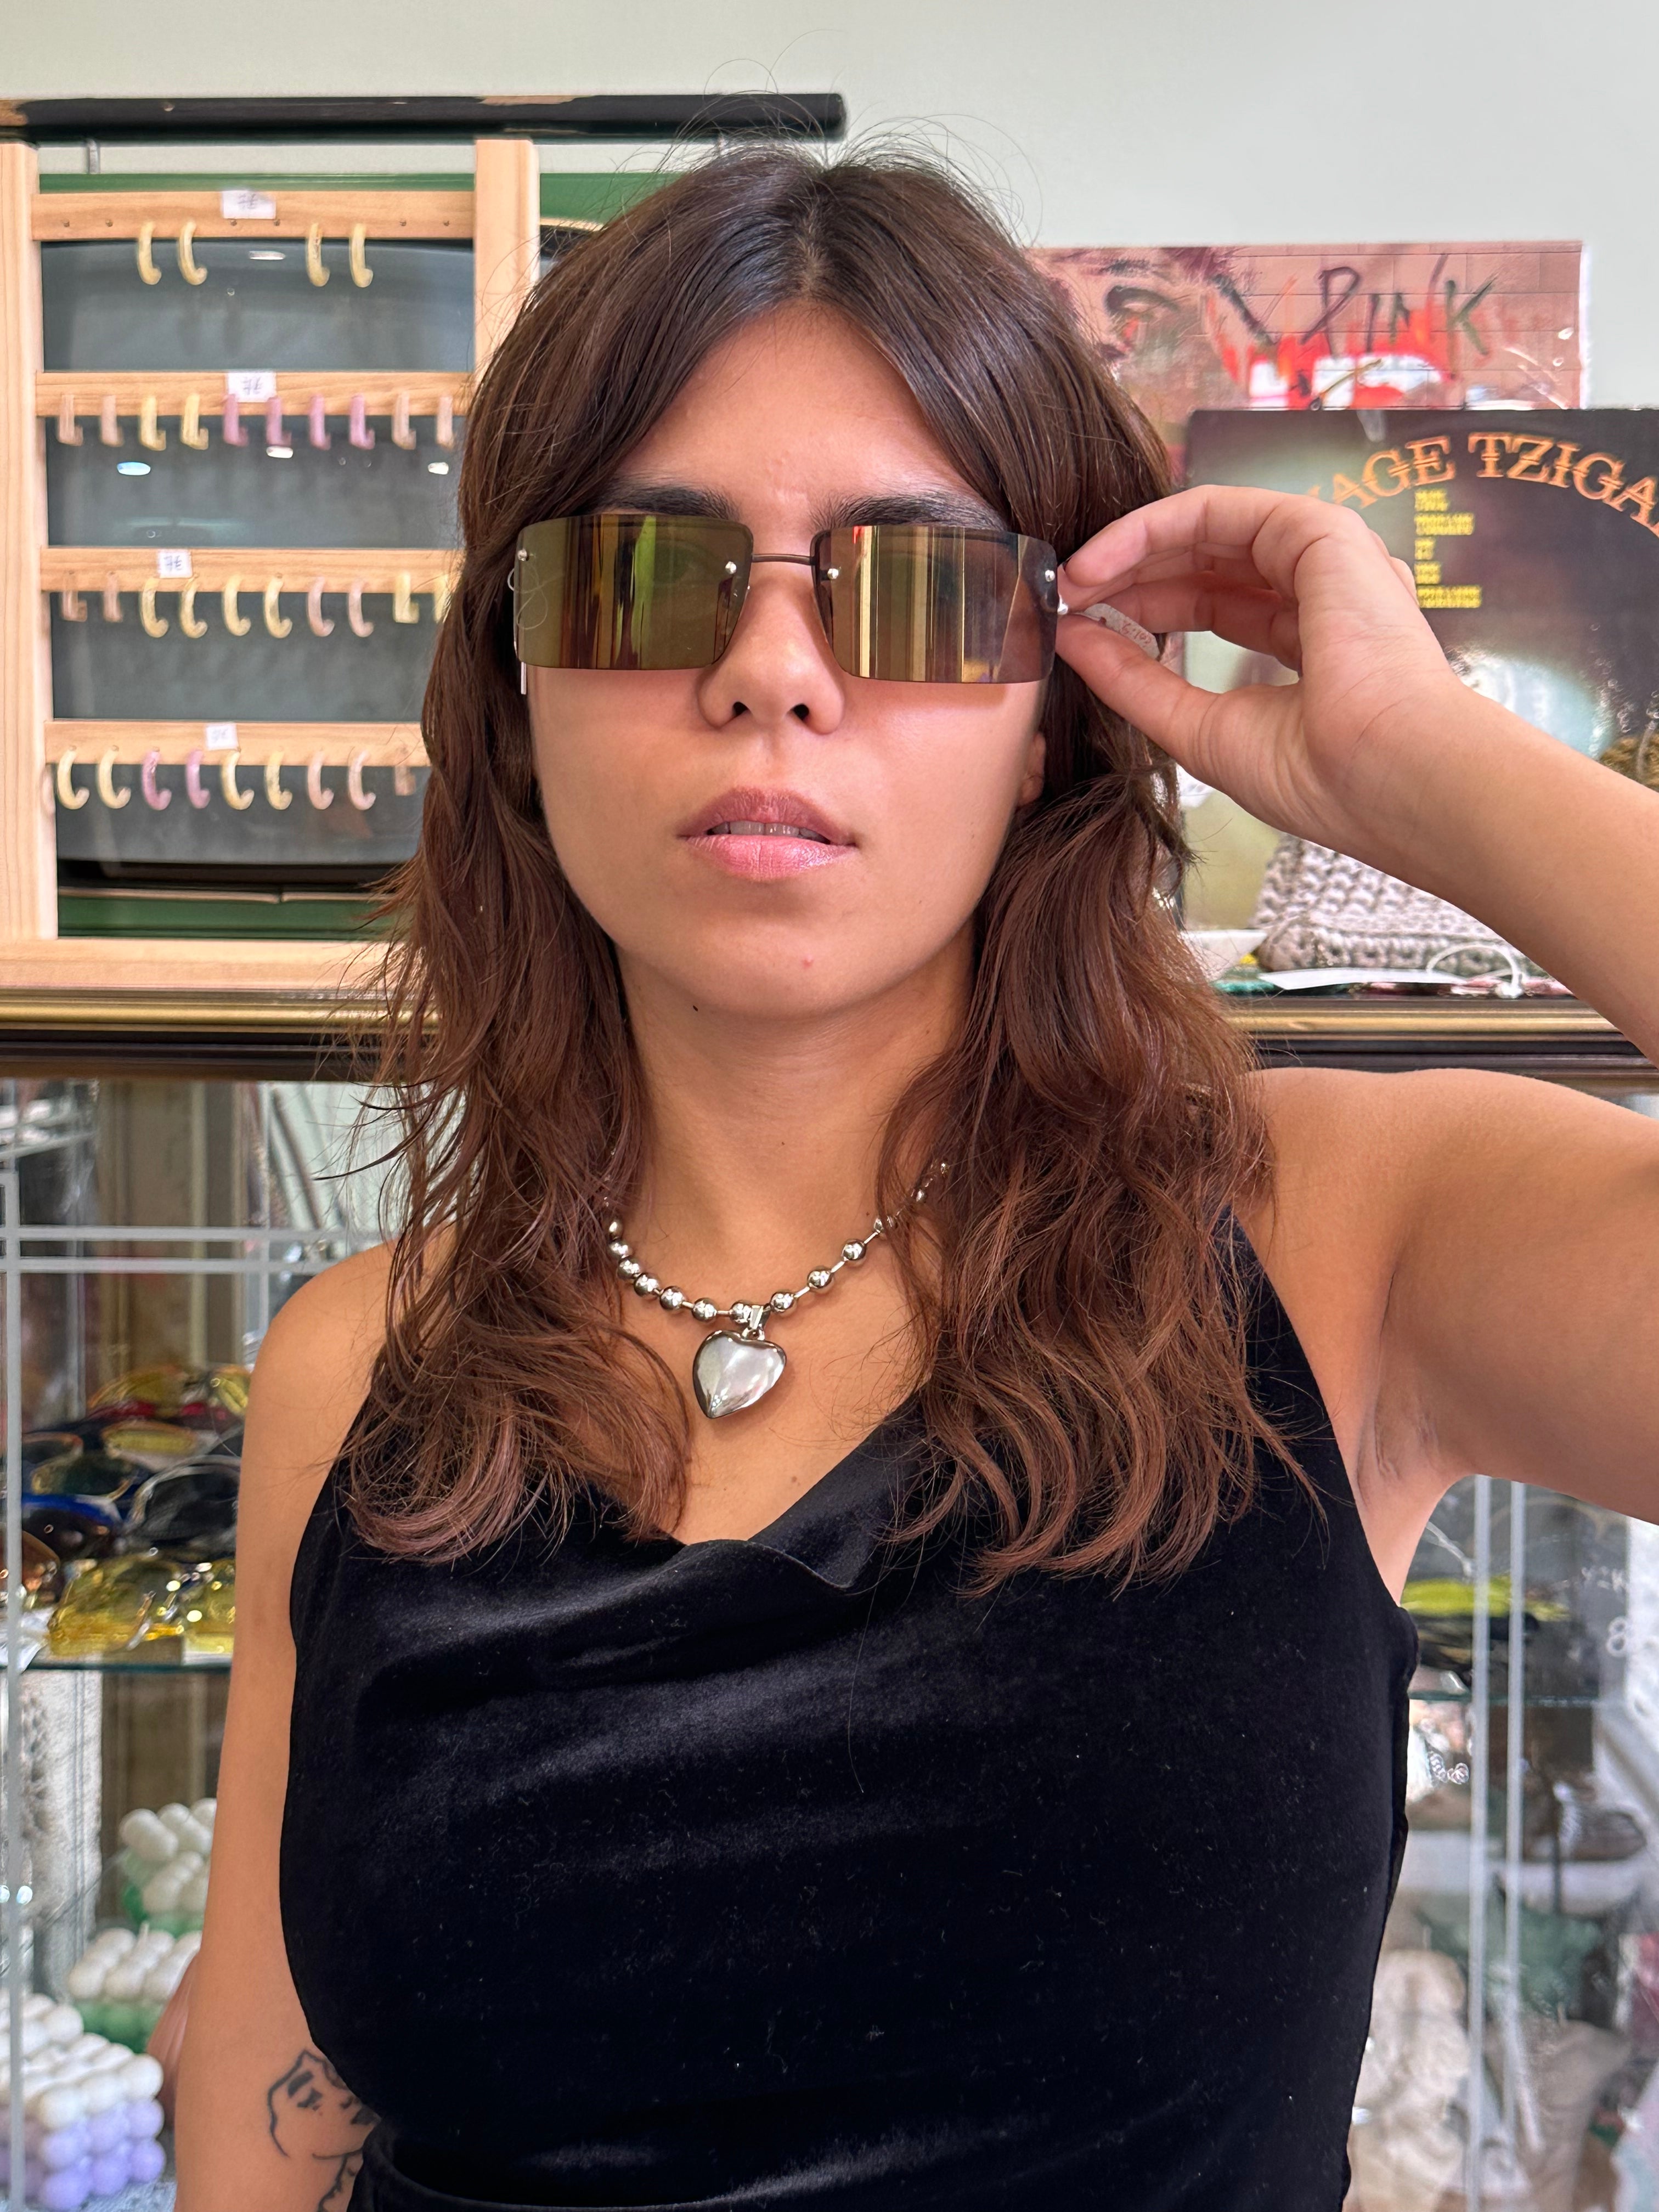 Vintage Gianni Venturi sunglasses